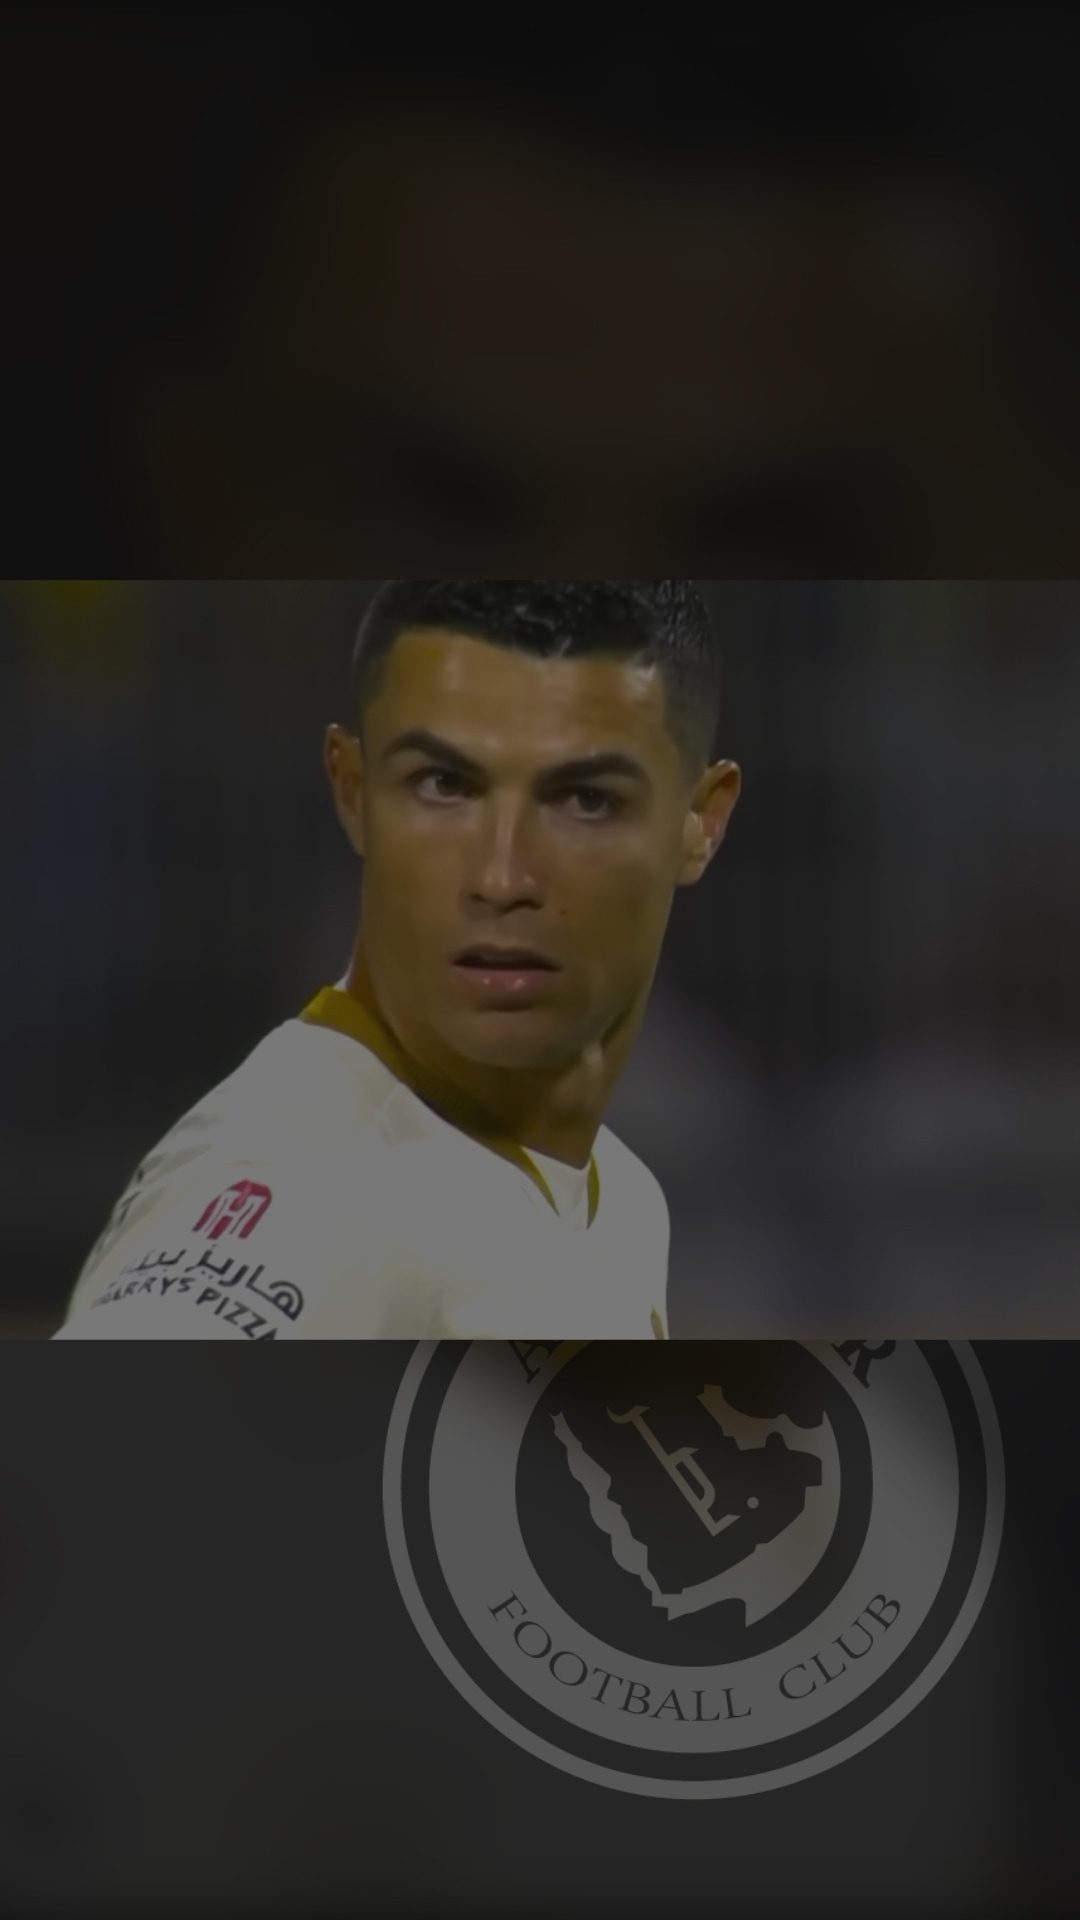 eledanishop - Maglia CR7 Cristiano Ronaldo EDIZIONE SPECIALE CR7 Museu  2019/20